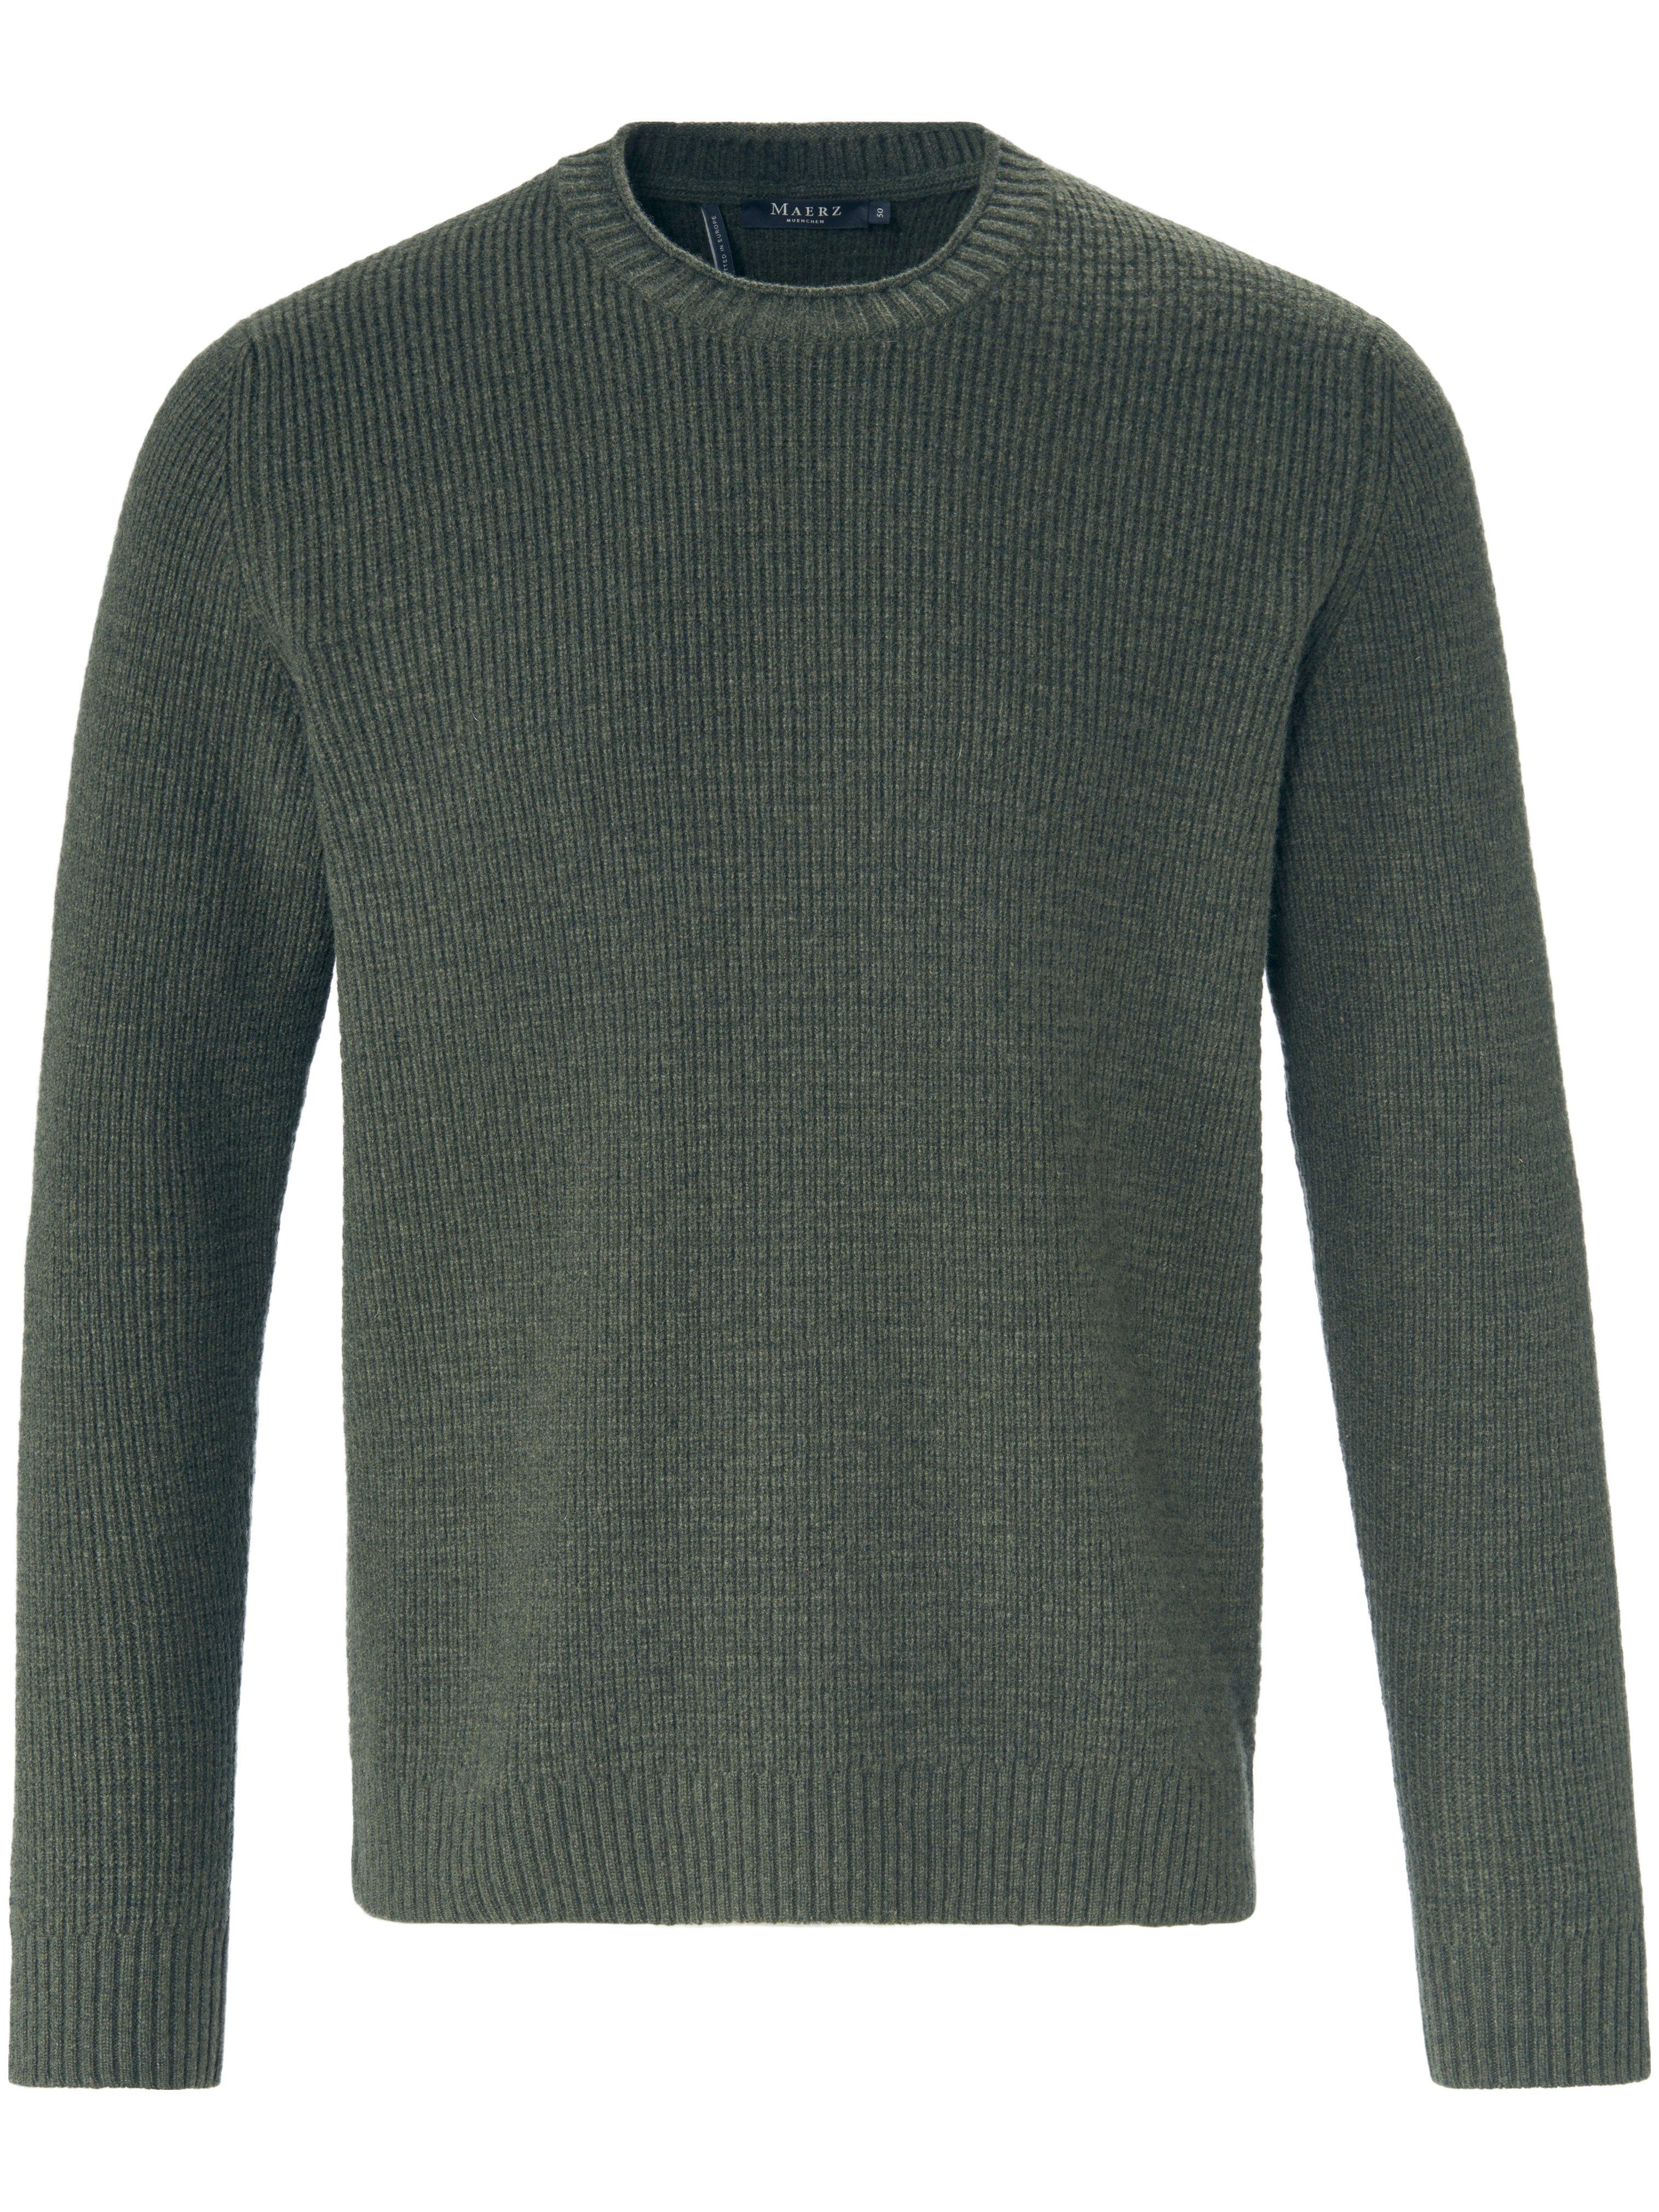 Le pull en tricot  MAERZ Muenchen vert